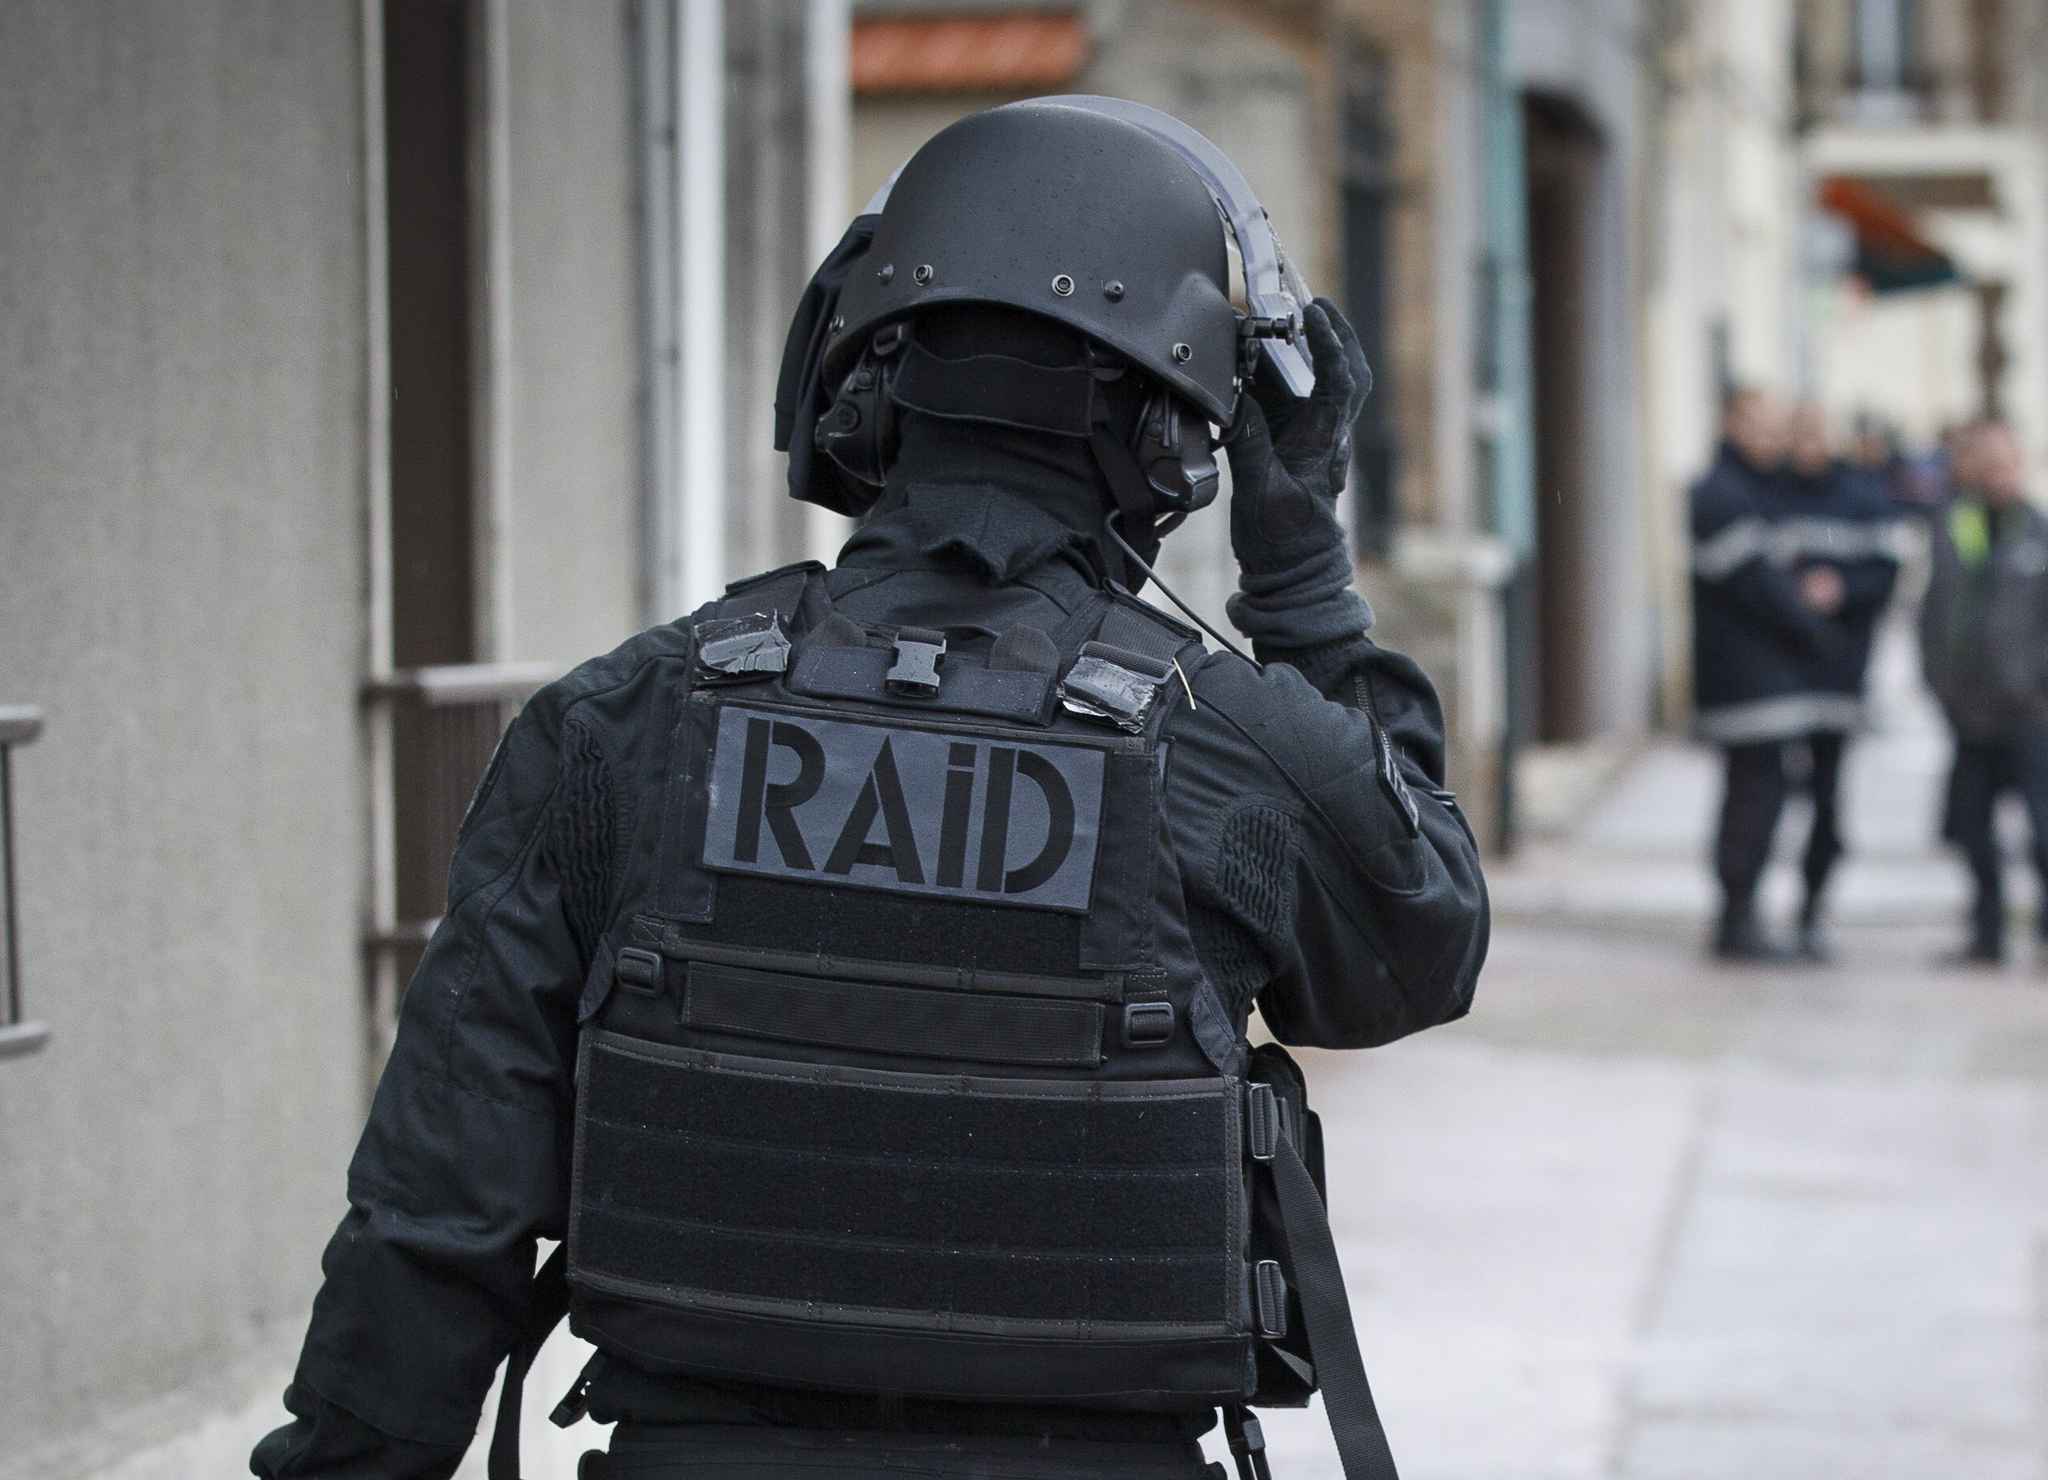 2048x1536-fit_policier-du-raid-illustration.jpg